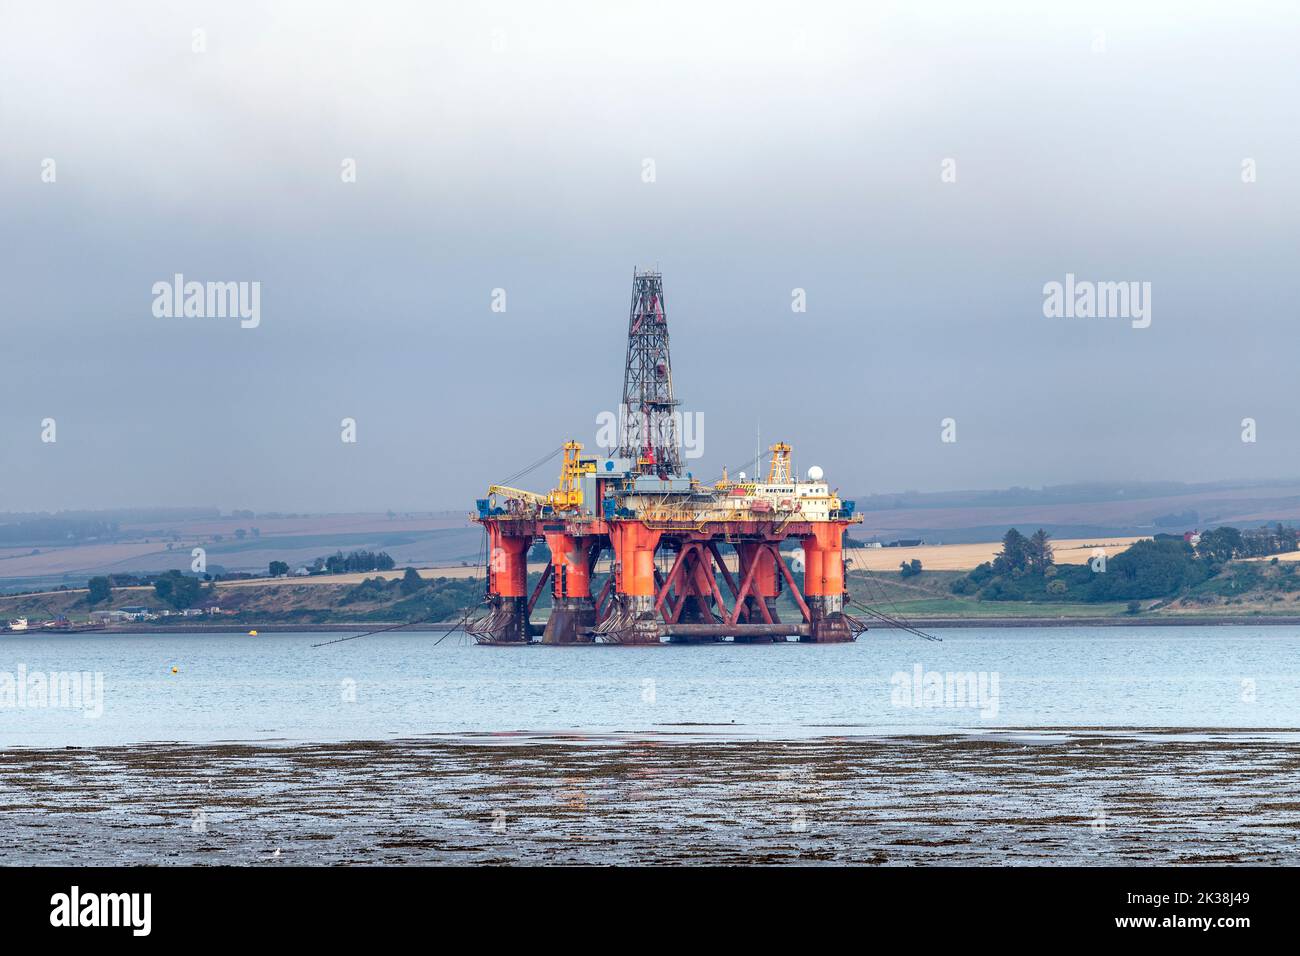 Plataforma petrolífera amarrada en el fiordo de Cromarty, nvergordon, Easter Ross, en Ross y Cromarty, Highland, Escocia, Reino Unido Foto de stock